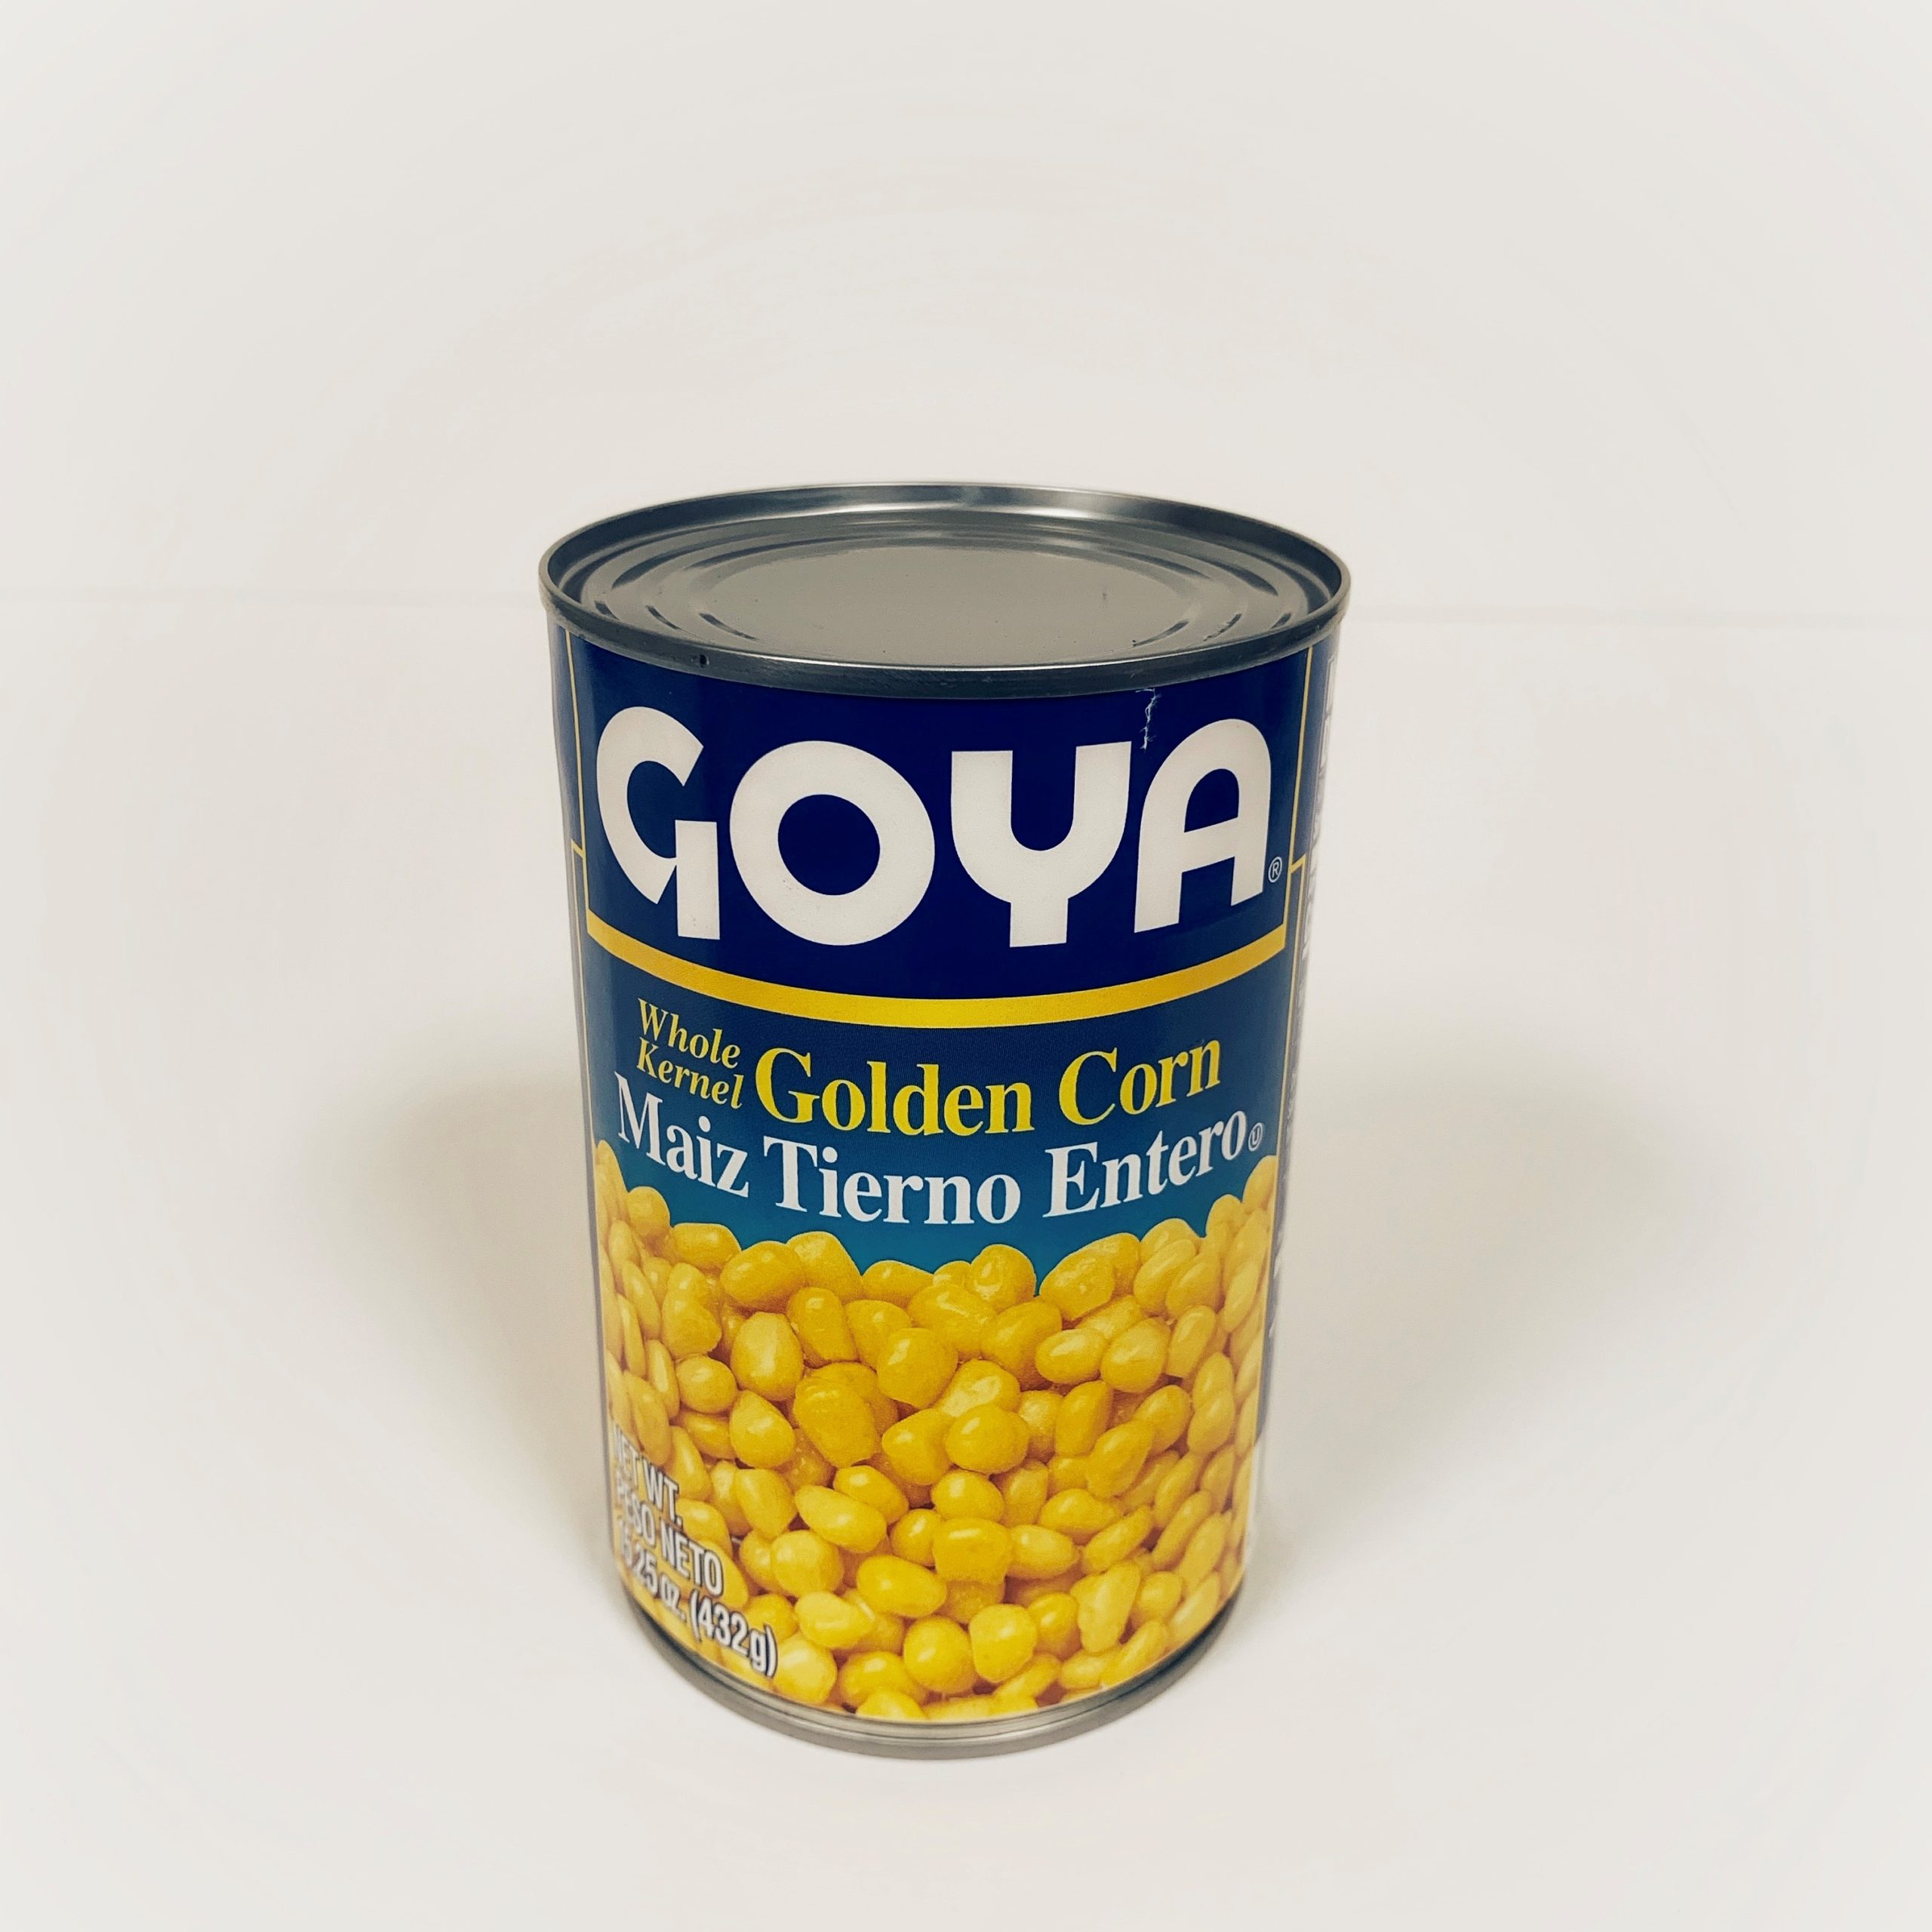 GOYA Golden Corn